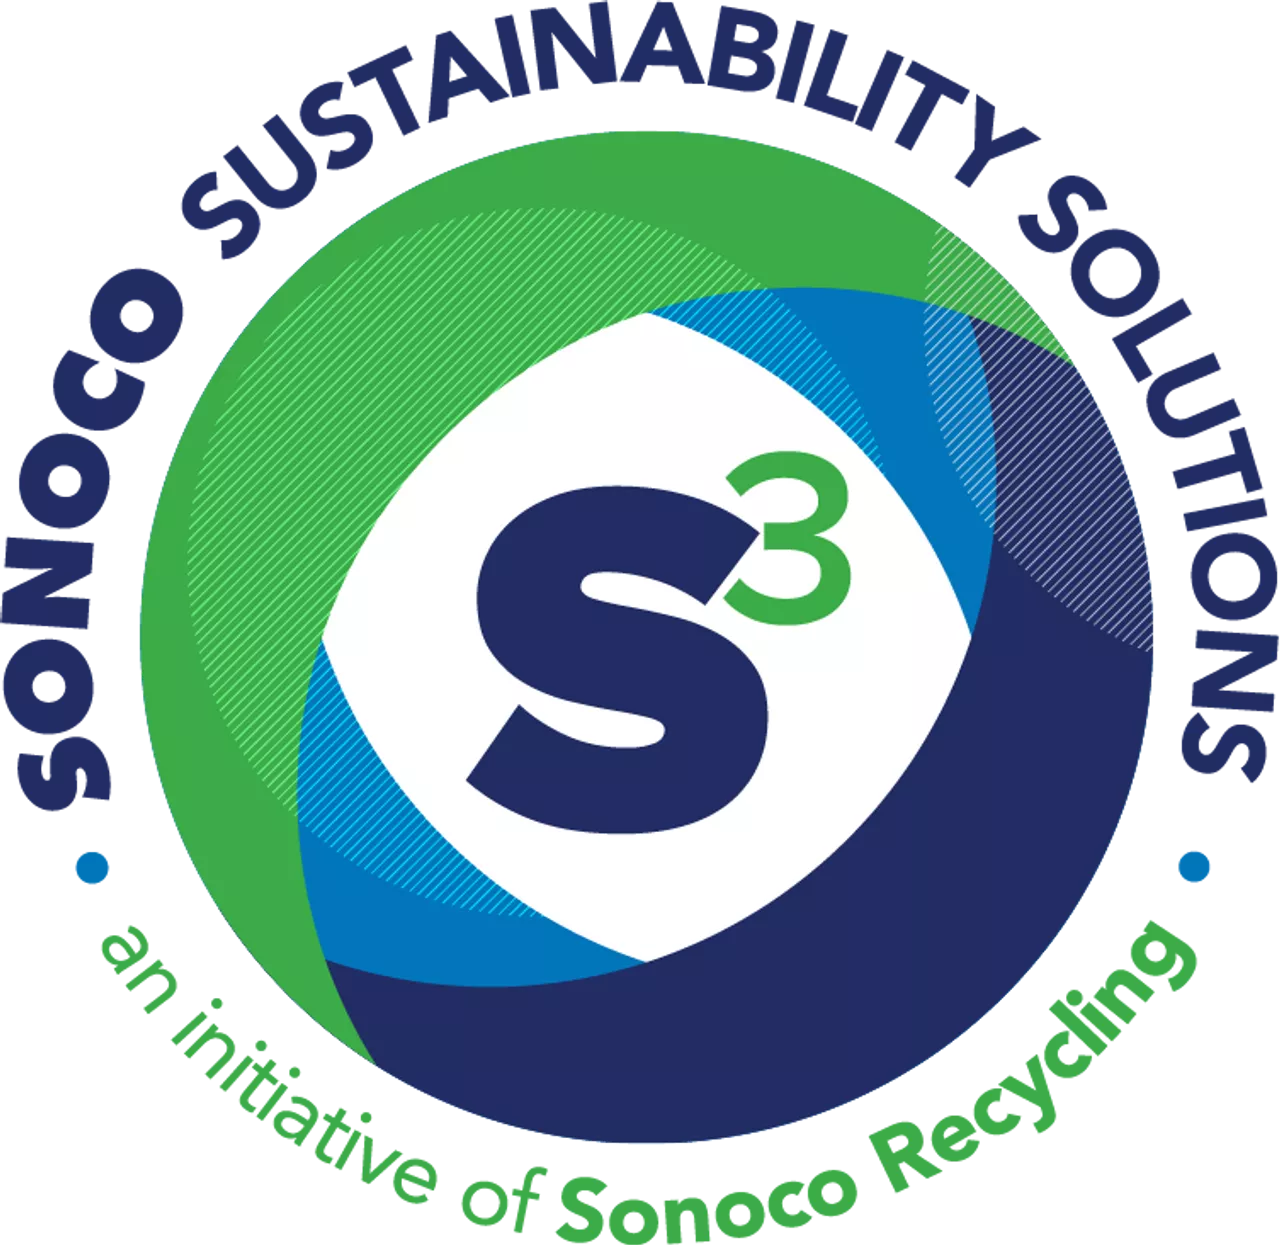 S3 logo.